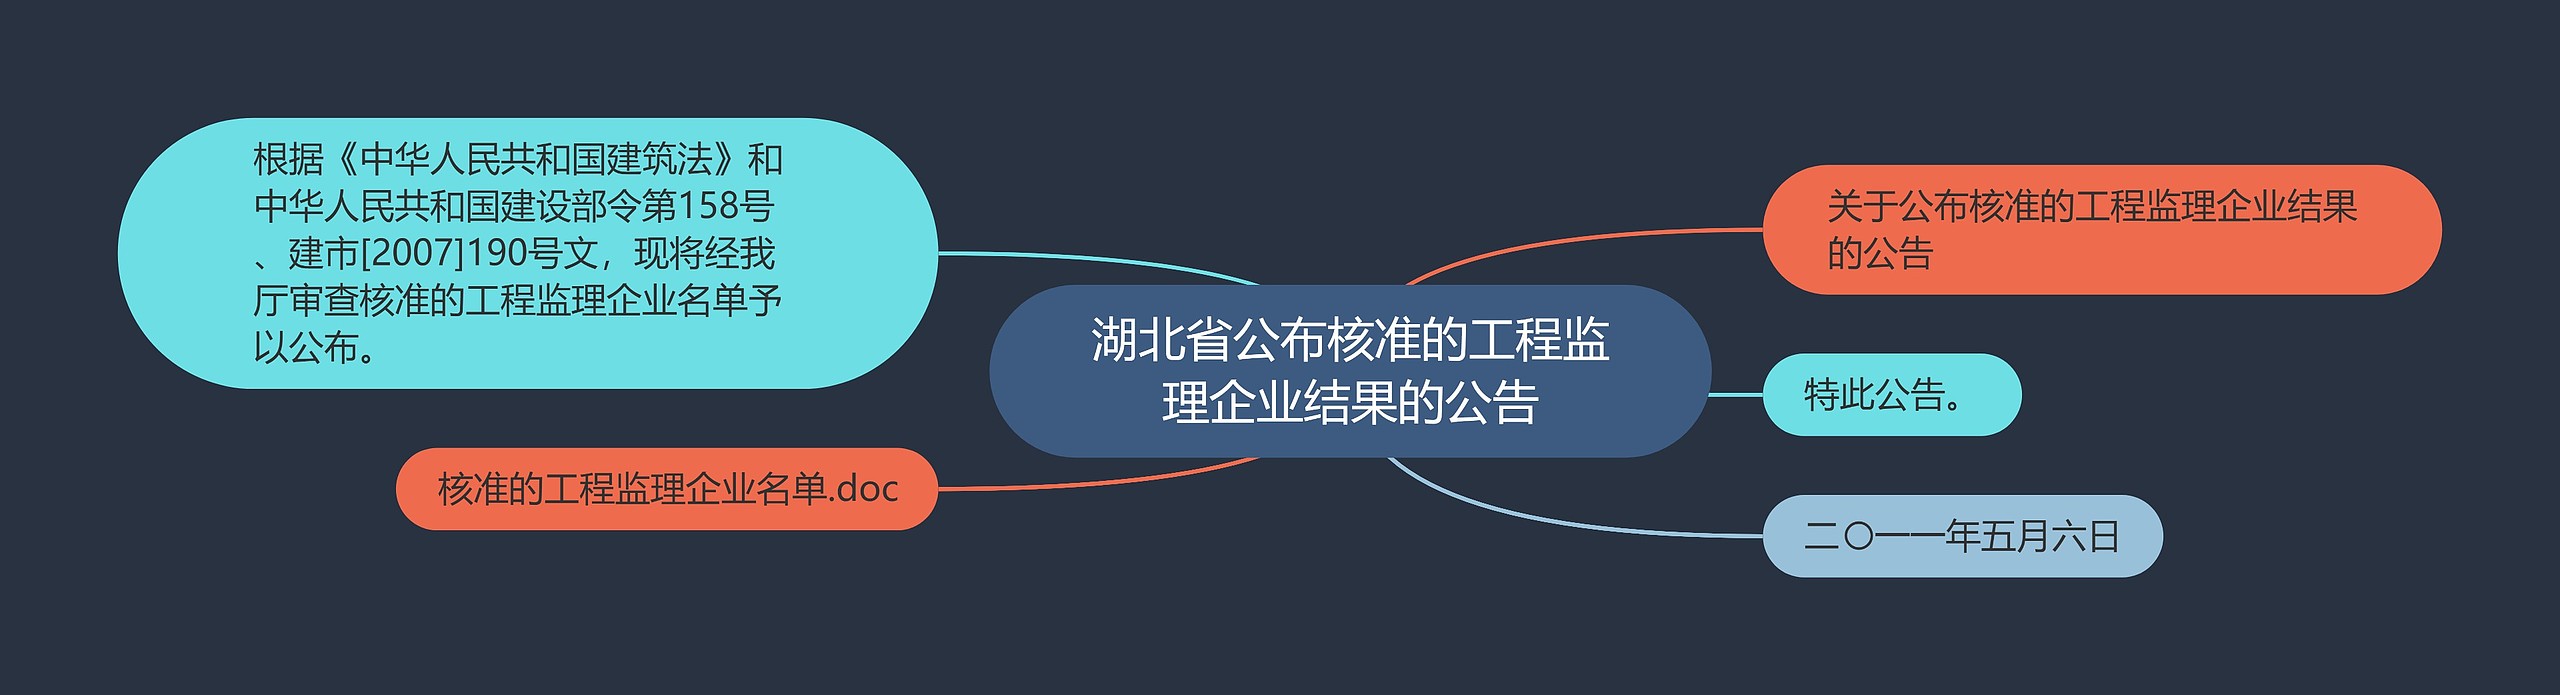 湖北省公布核准的工程监理企业结果的公告思维导图